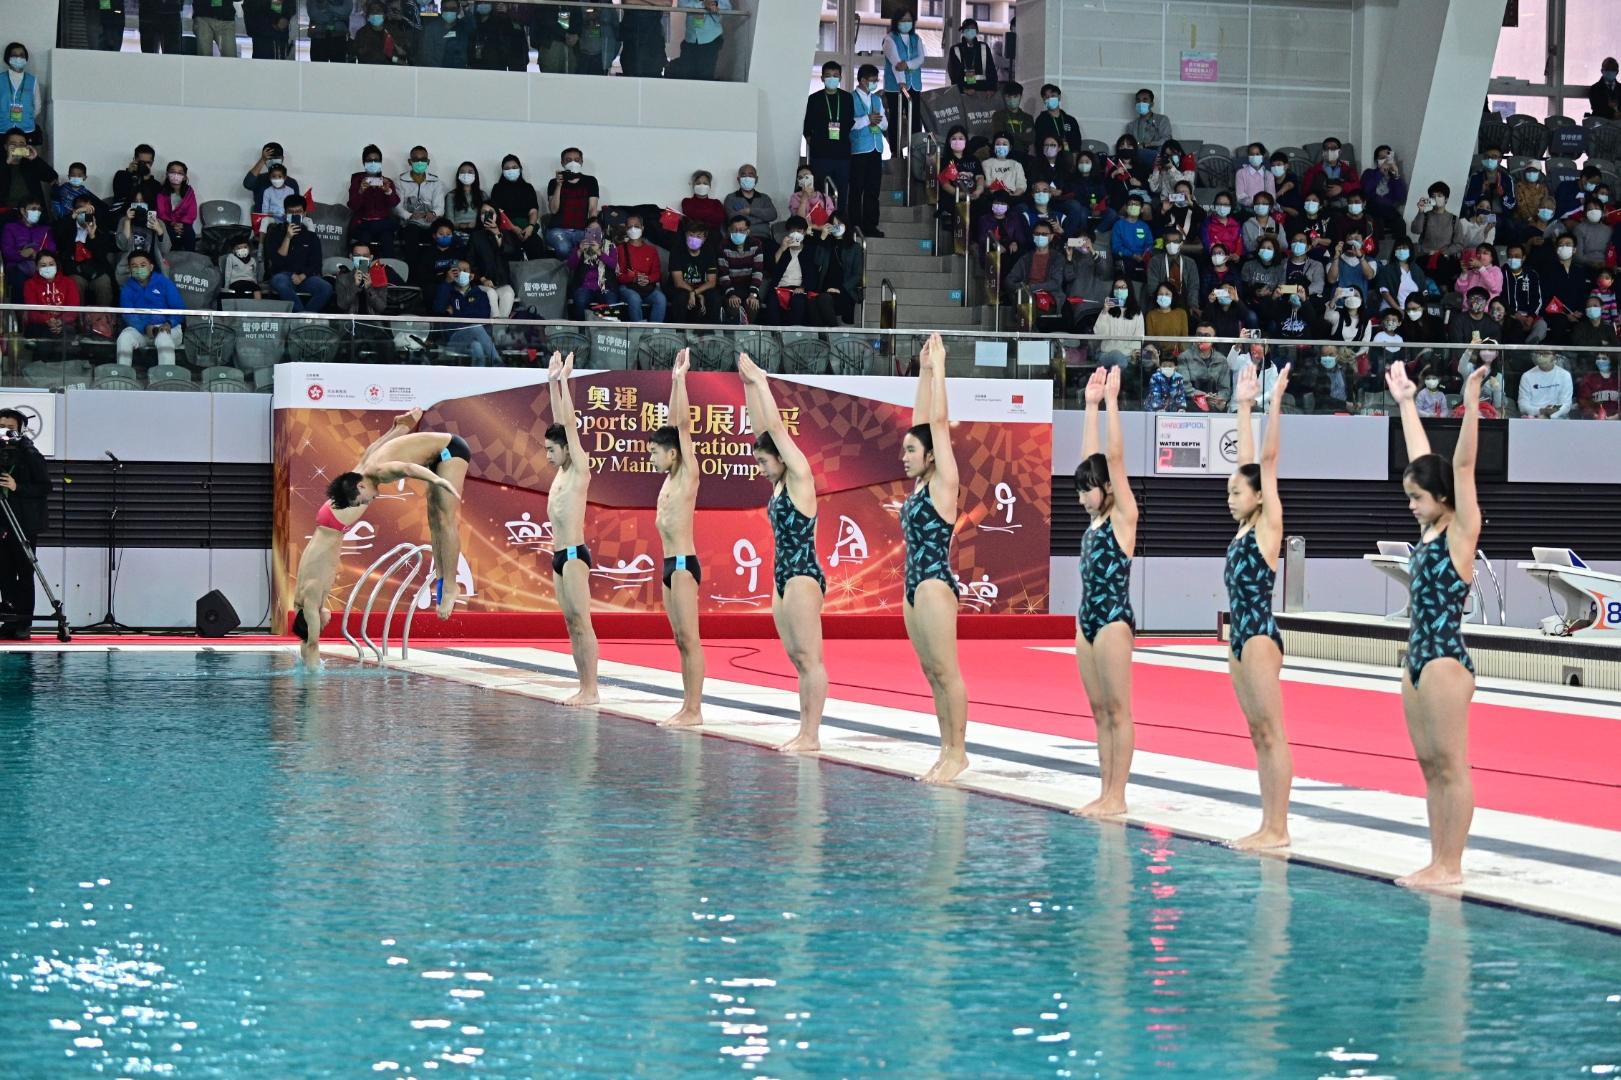 東京2020奧運會內地奧運健兒代表團今日（十二月四日）上午出席在維多利亞公園游泳池舉行的「奧運健兒展風采」運動示範。圖示內地跳水運動員王宗源（左一）和香港青少年運動員作跳水示範表演。